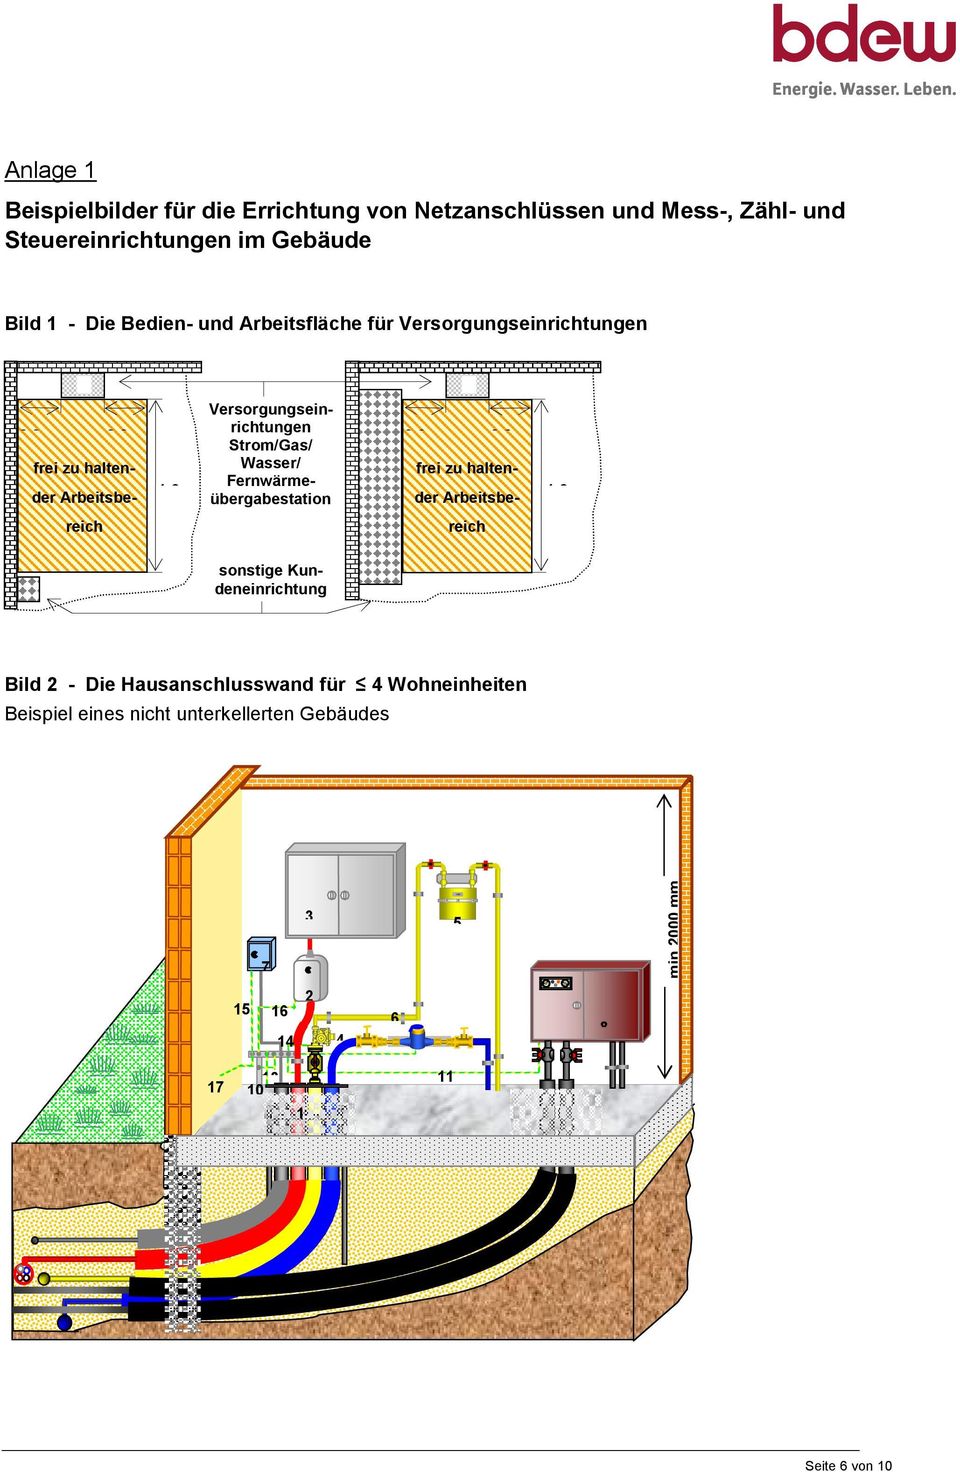 Wasser/ Fernwärmeübergabestation I 0,3 m 0,3 m frei zu haltender Arbeitsbe- 1,2 m reich reich sonstige Kundeneinrichtung Bild 2 - Die